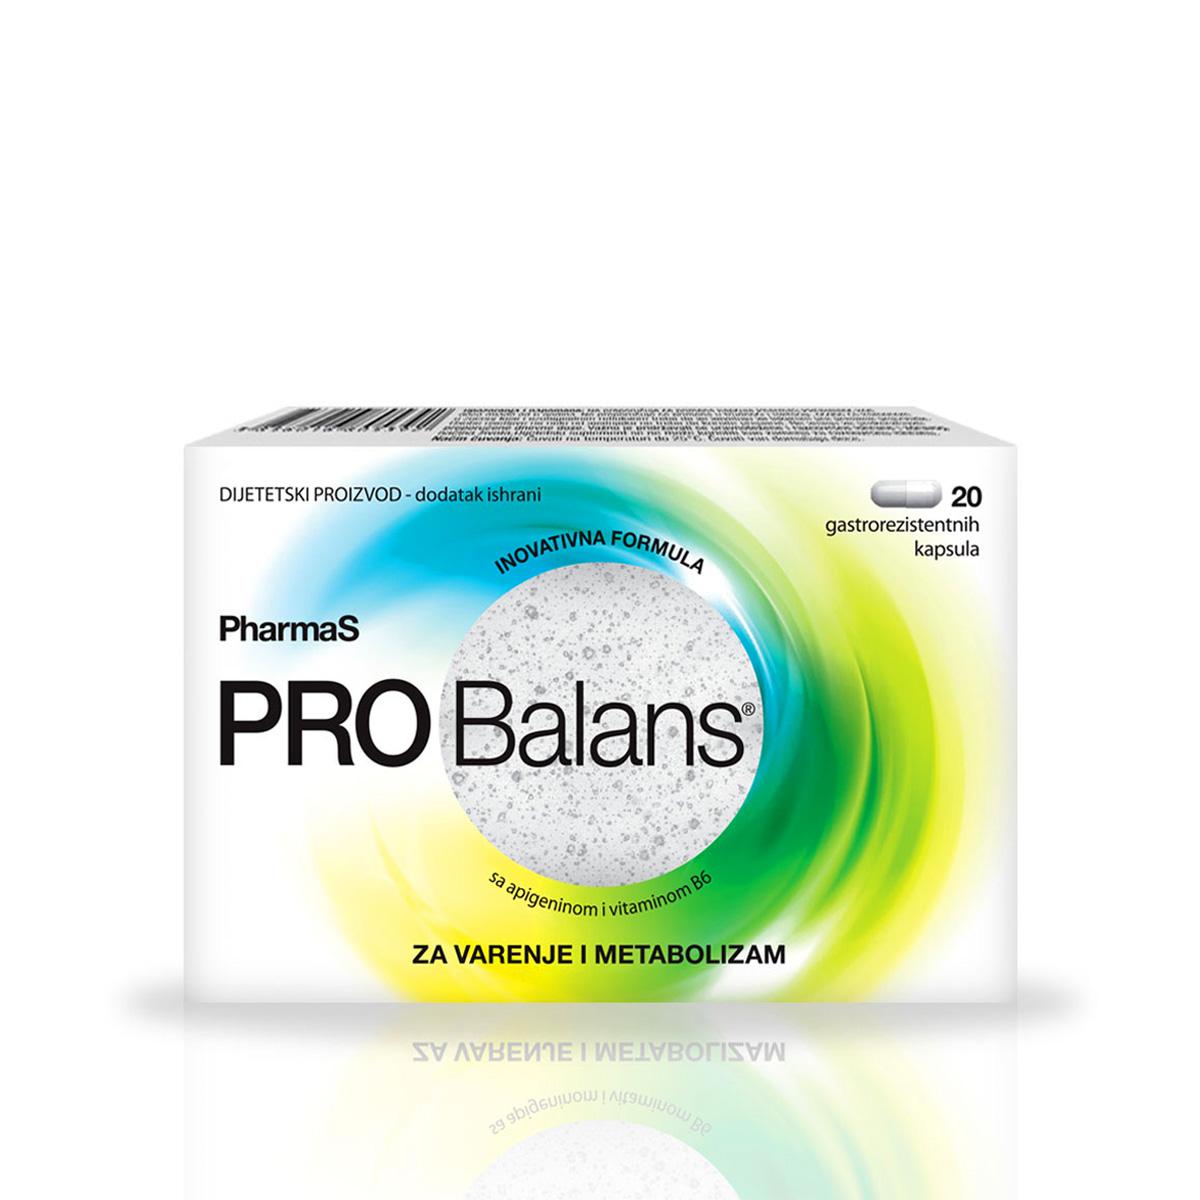 PHARMAS Probiotik za varenje i metabolizam PROBalans 20/1 120469